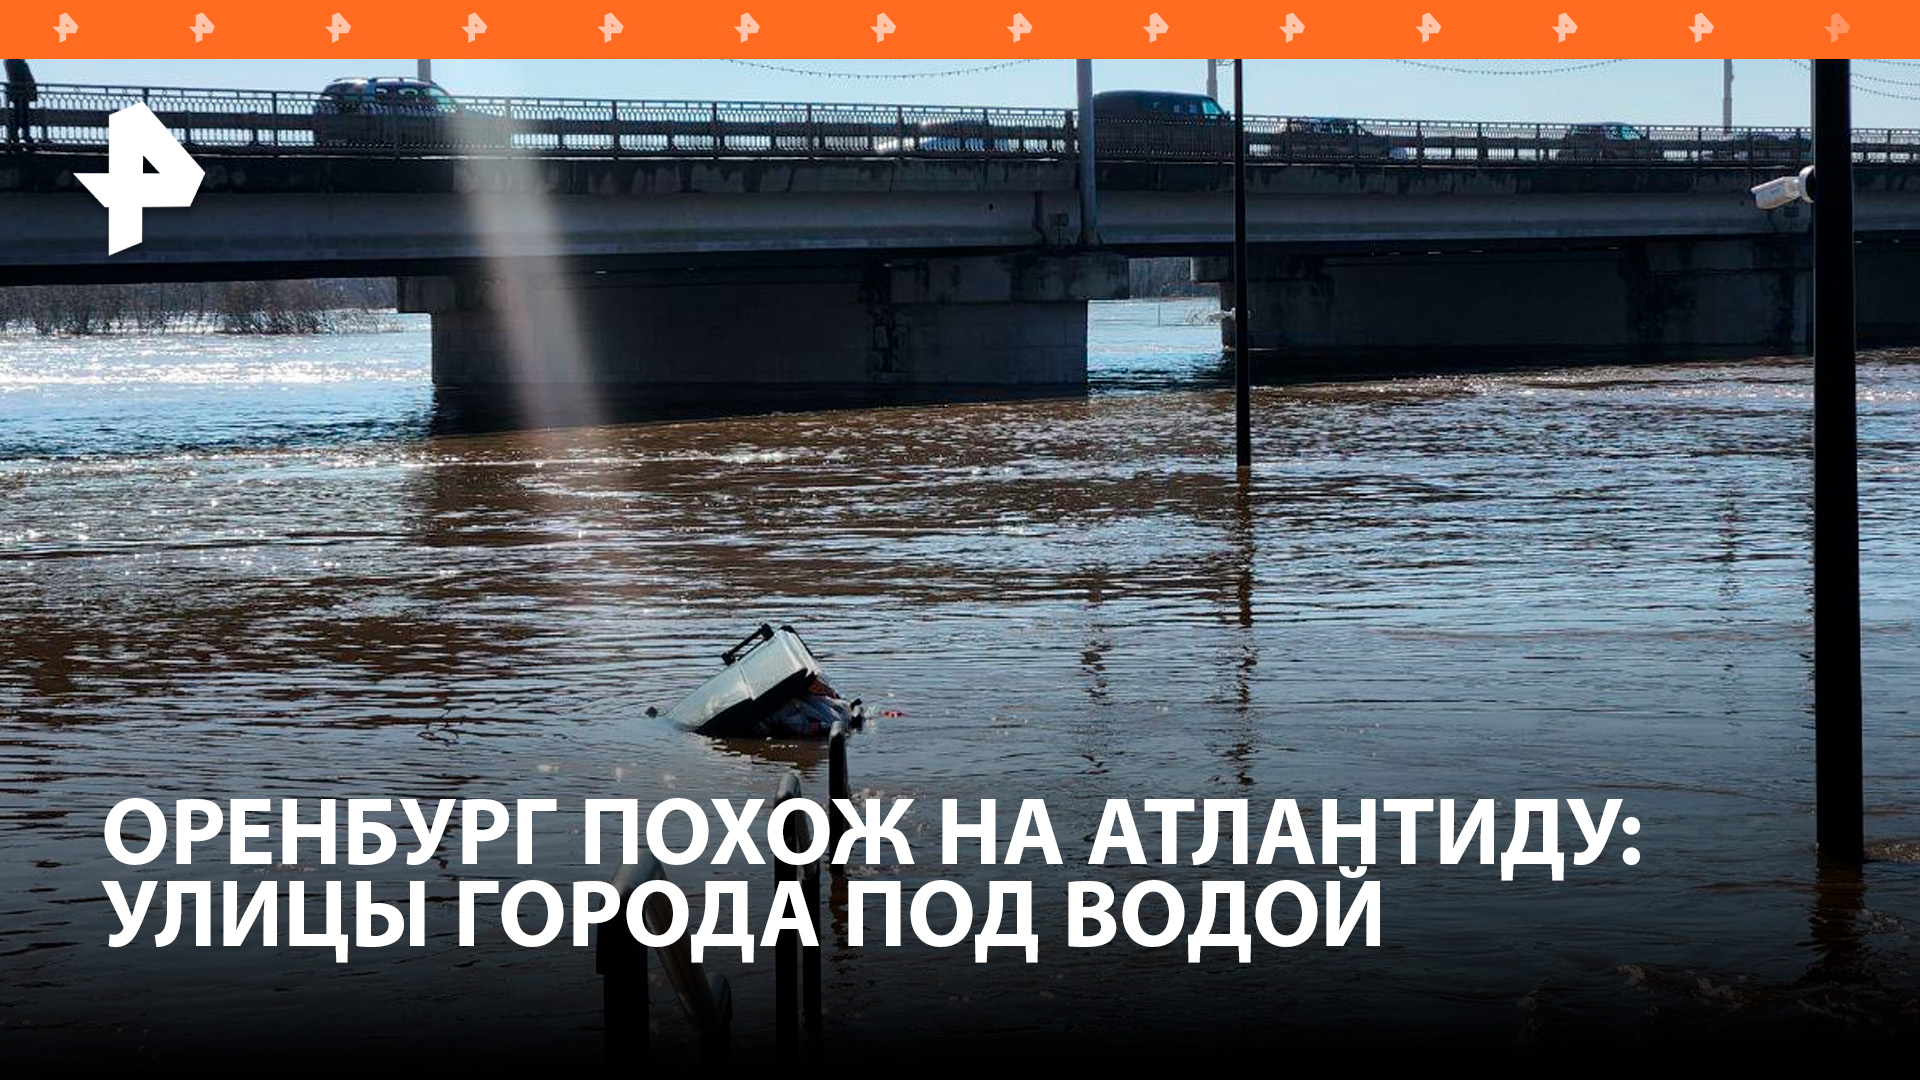 Улицы уходят под воду одна за другой: в Оренбурге затапливает новые районы / РЕН Новости